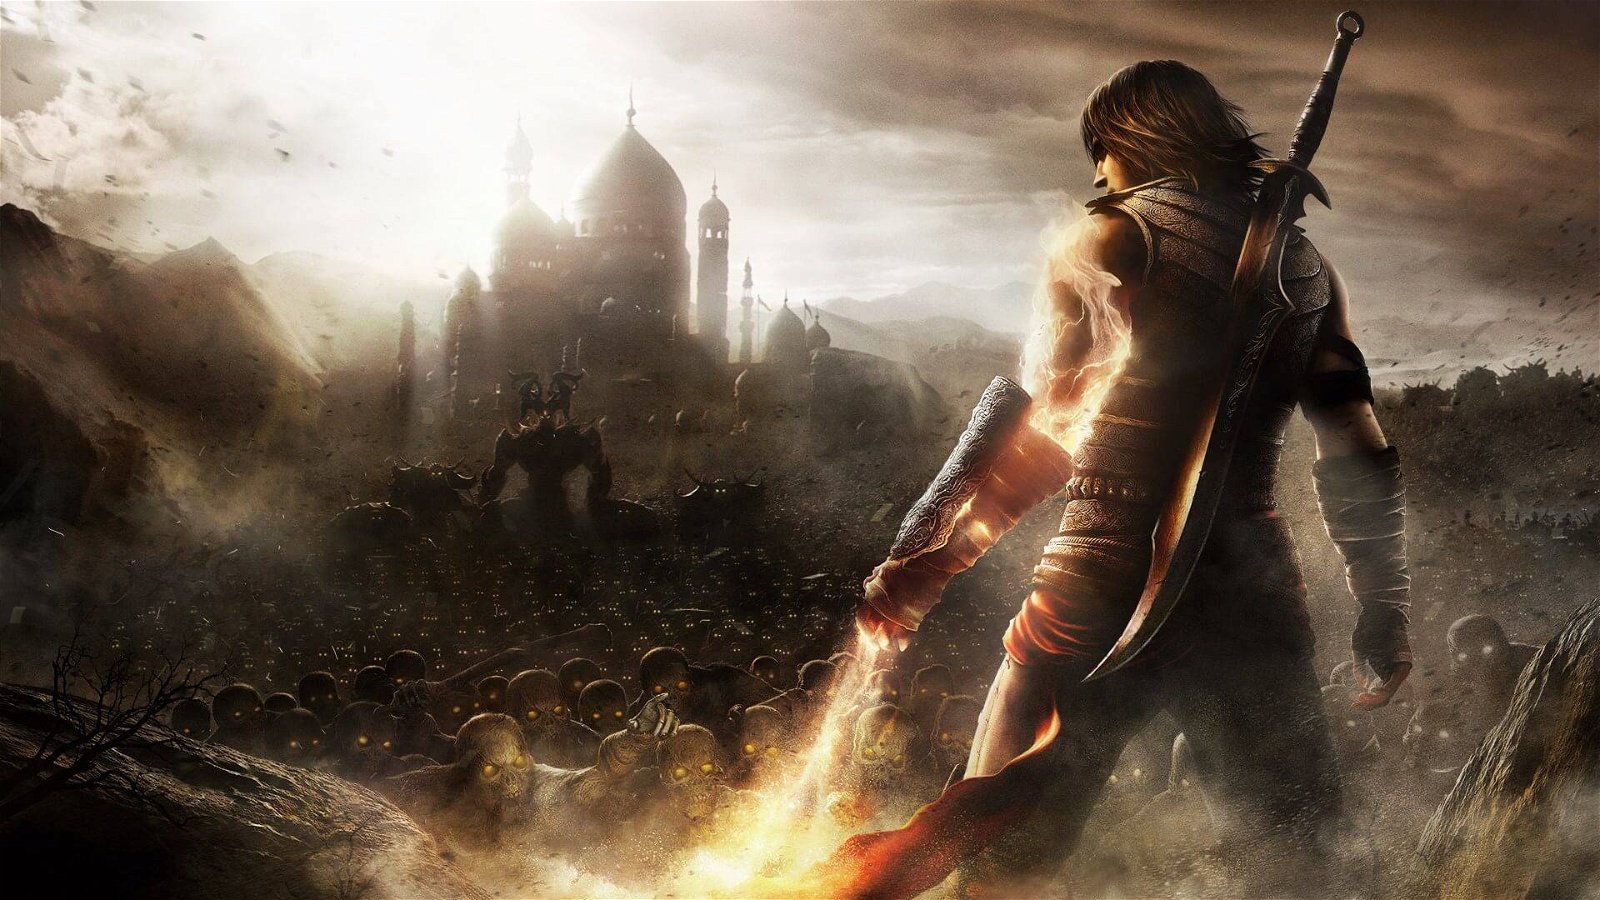 Immagine di Prince of Persia Remake confermato da Schreier, data di uscita inclusa